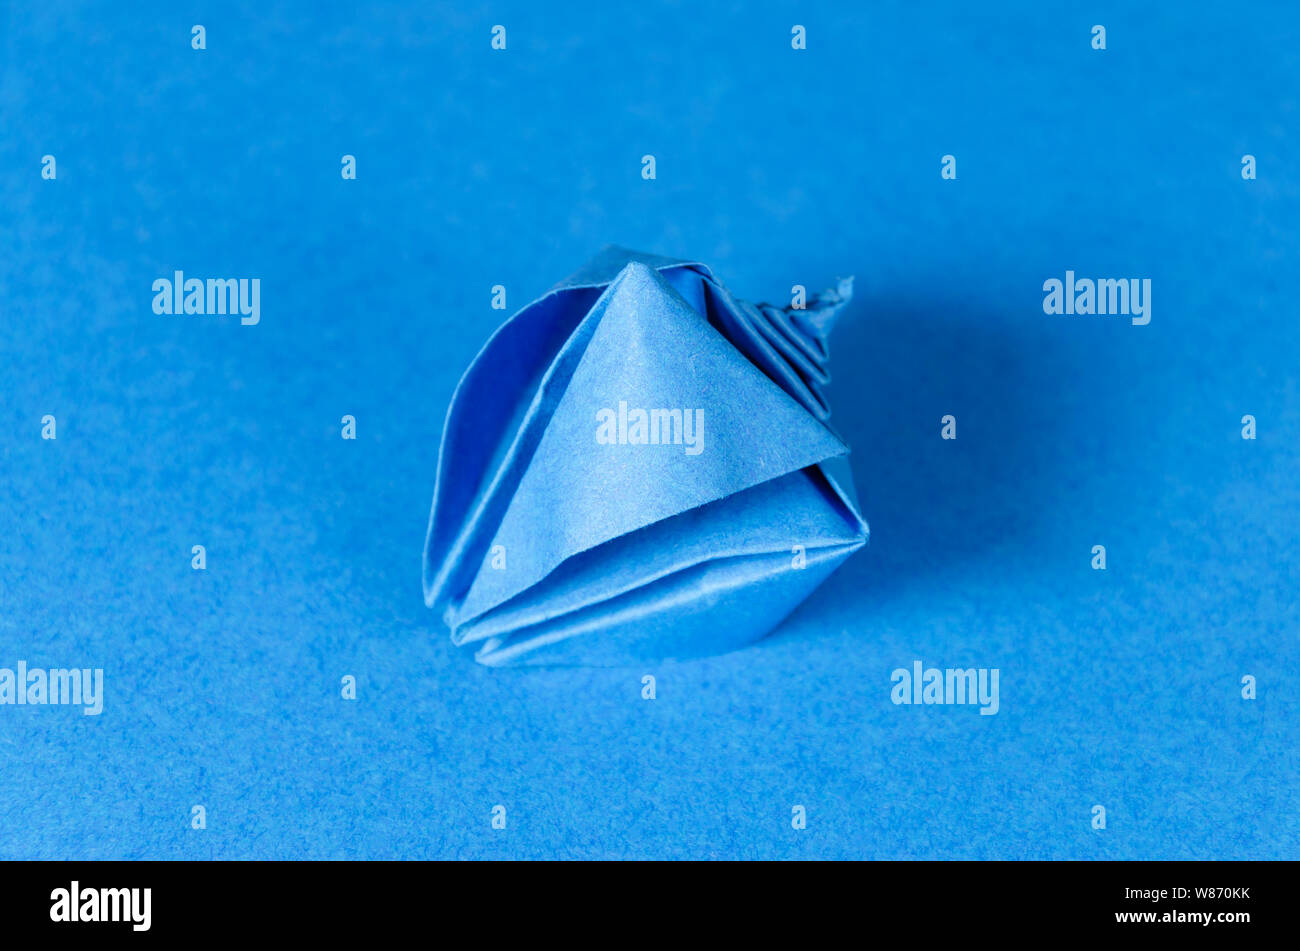 Seashell origami bleu sur fond bleu. L'art japonais du pliage de papier. Feuille de papier carré plat transférés dans la sculpture terminée. Banque D'Images